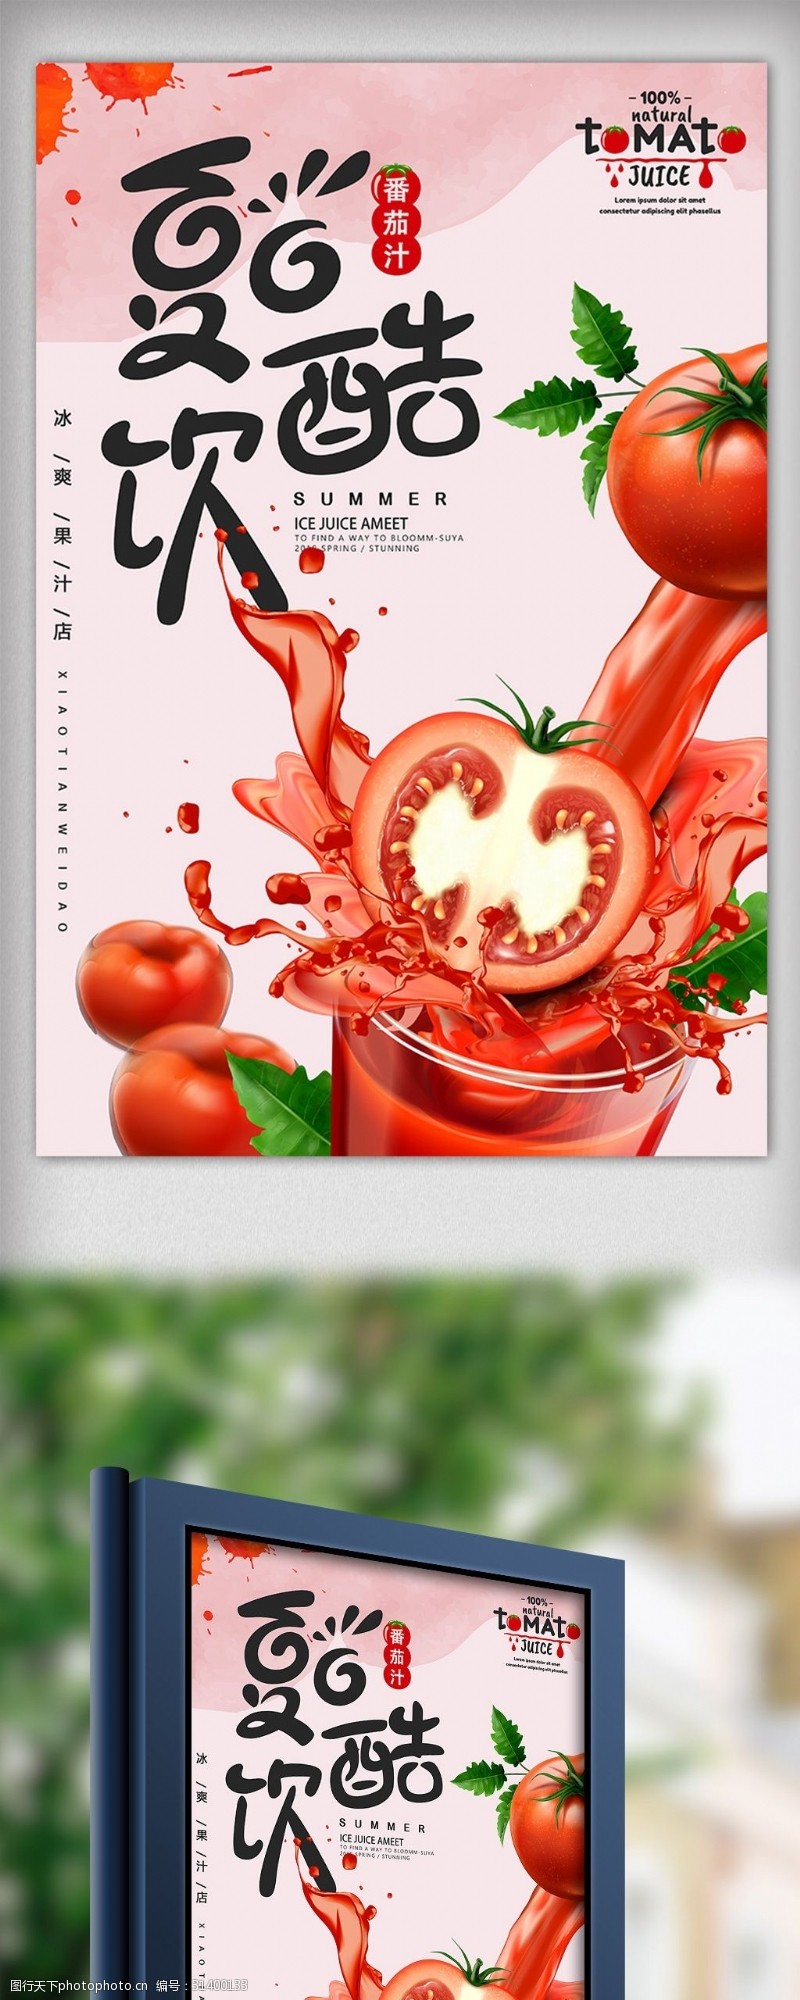 饮料图片免费下载夏季番茄饮料夏日特饮海报设计模板